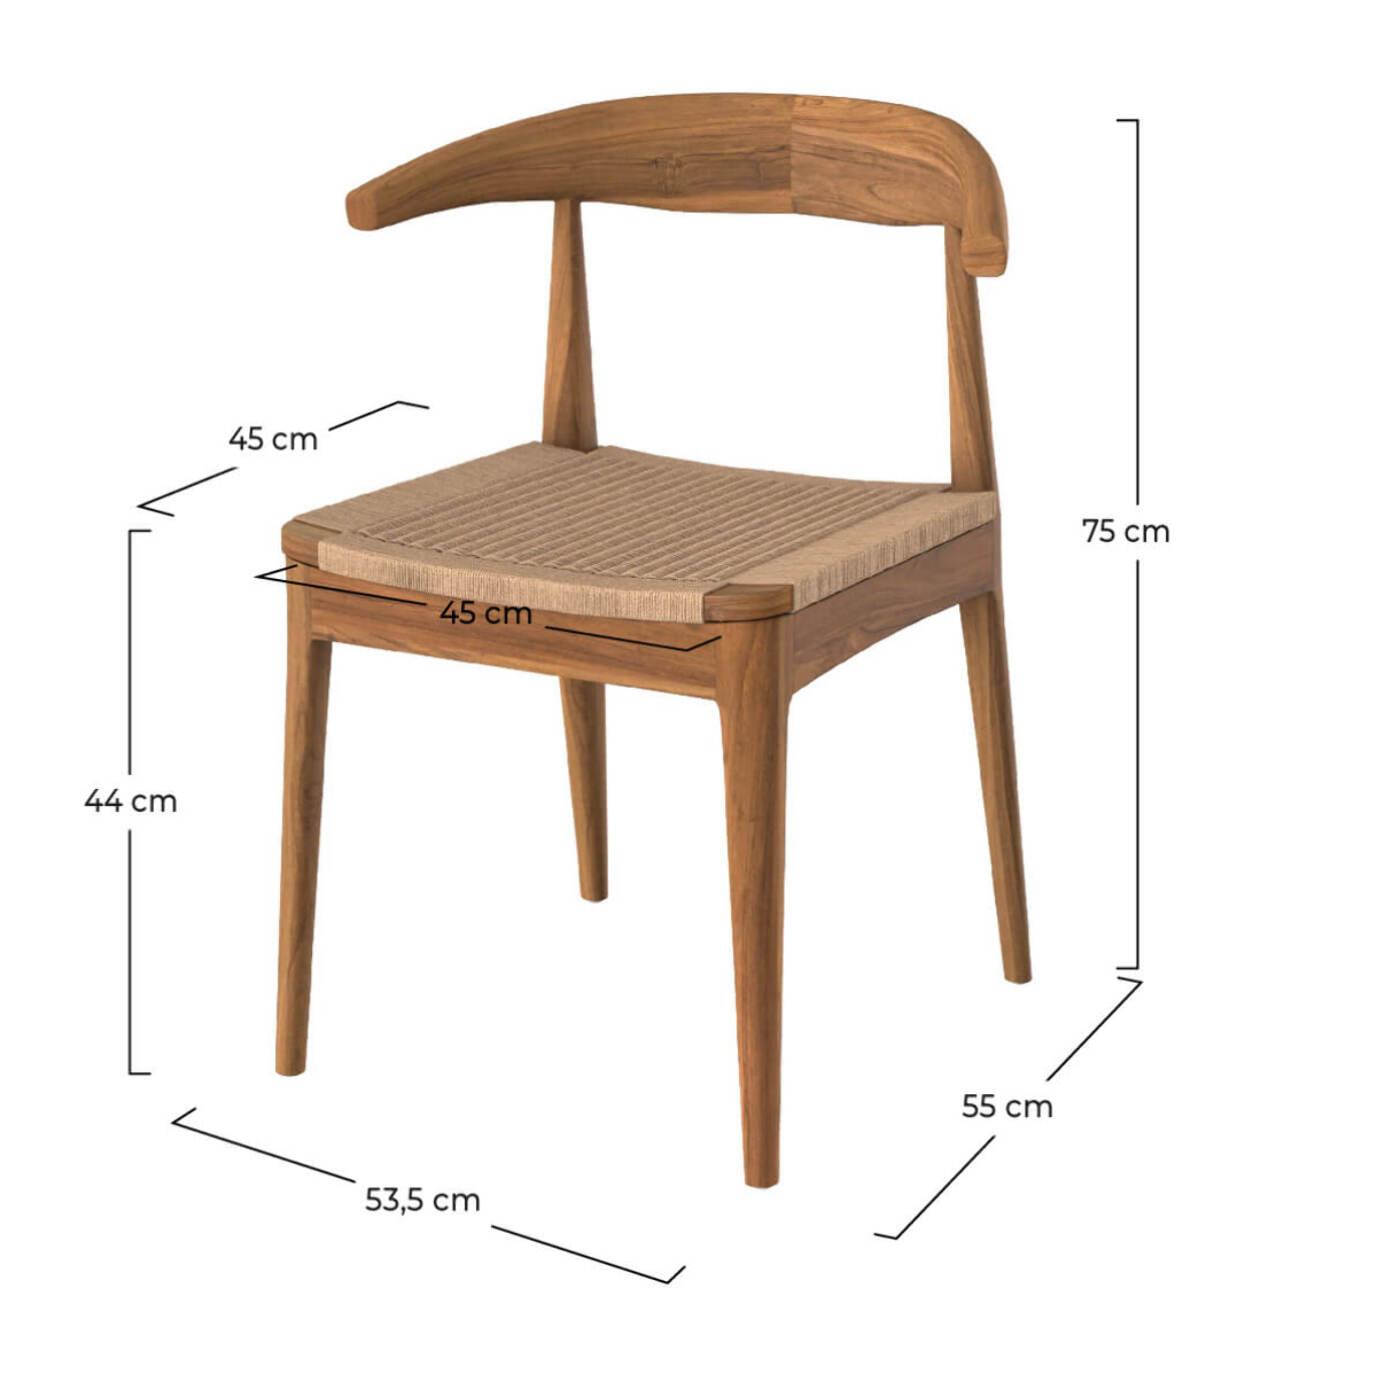 Chaise Java en bois de teck et cordage type loom